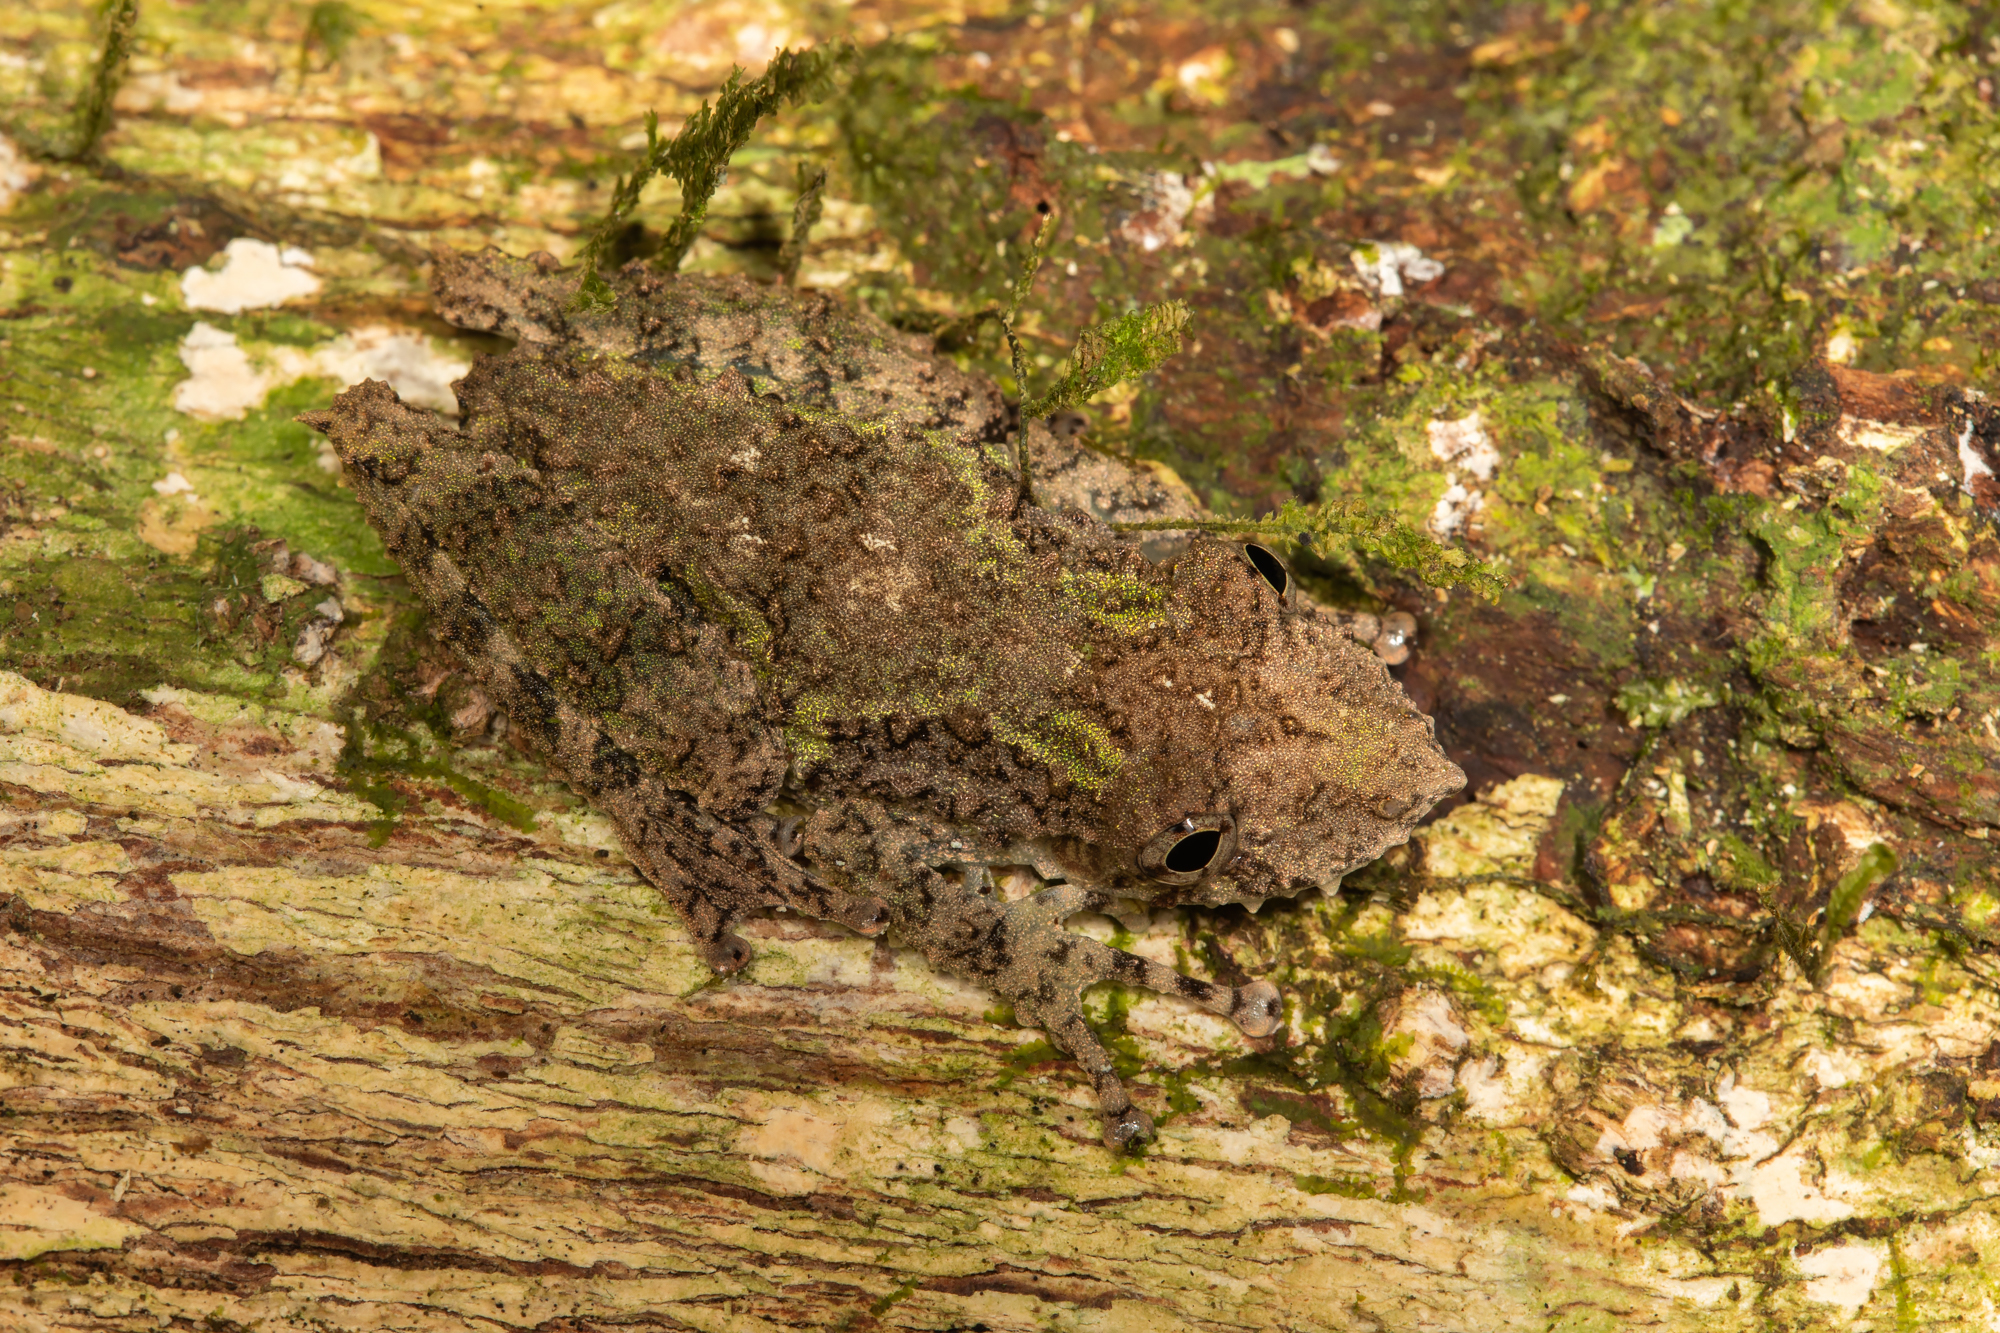 Eirunepe snouted treefrog